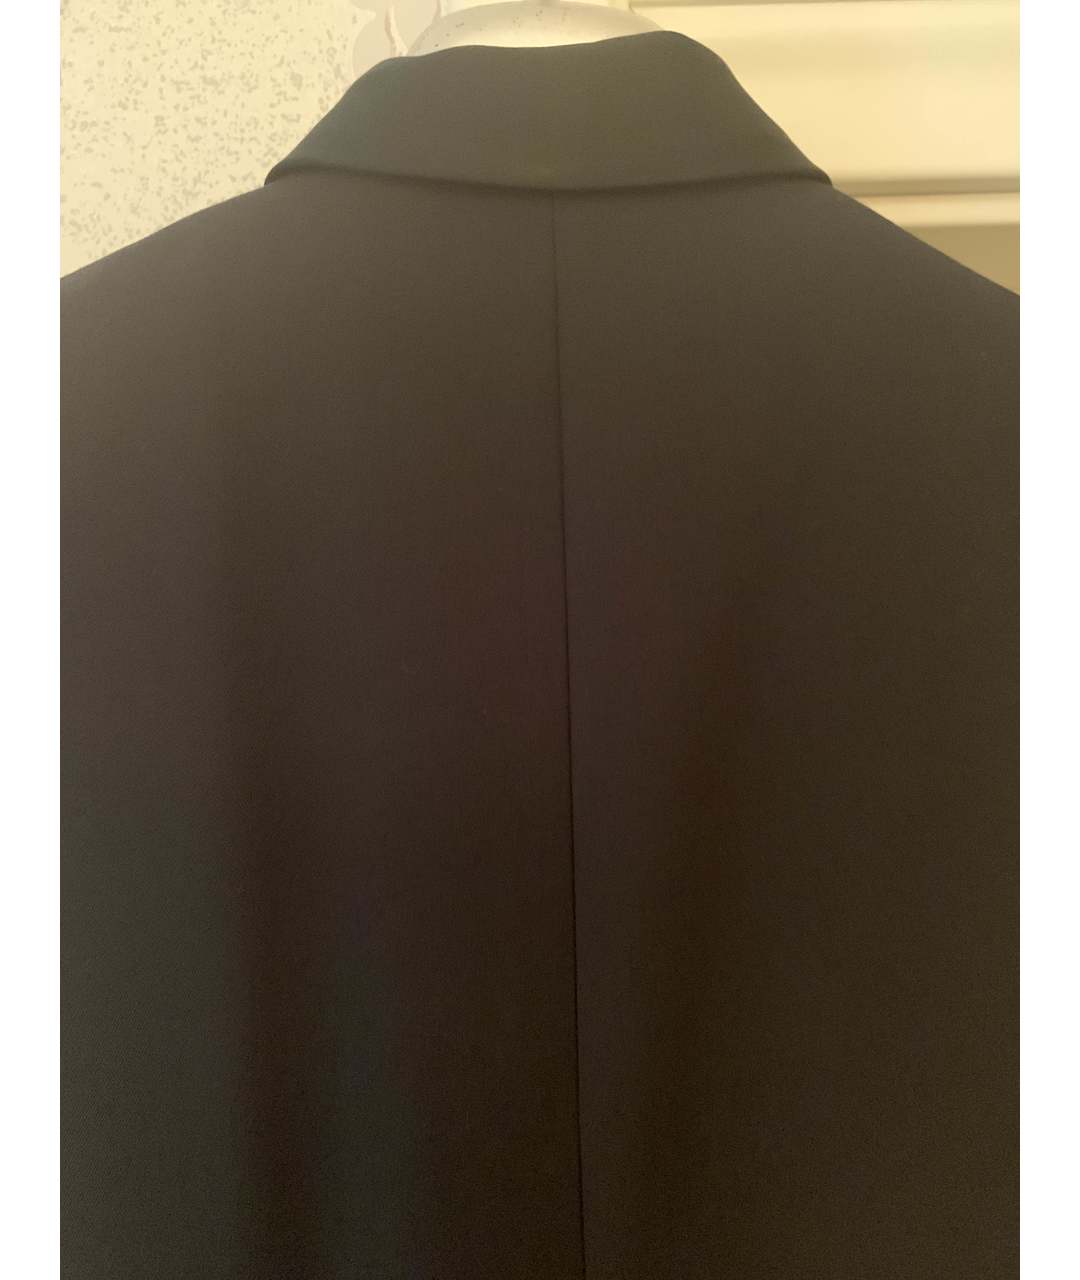 BALMAIN Черный шерстяной жакет/пиджак, фото 3